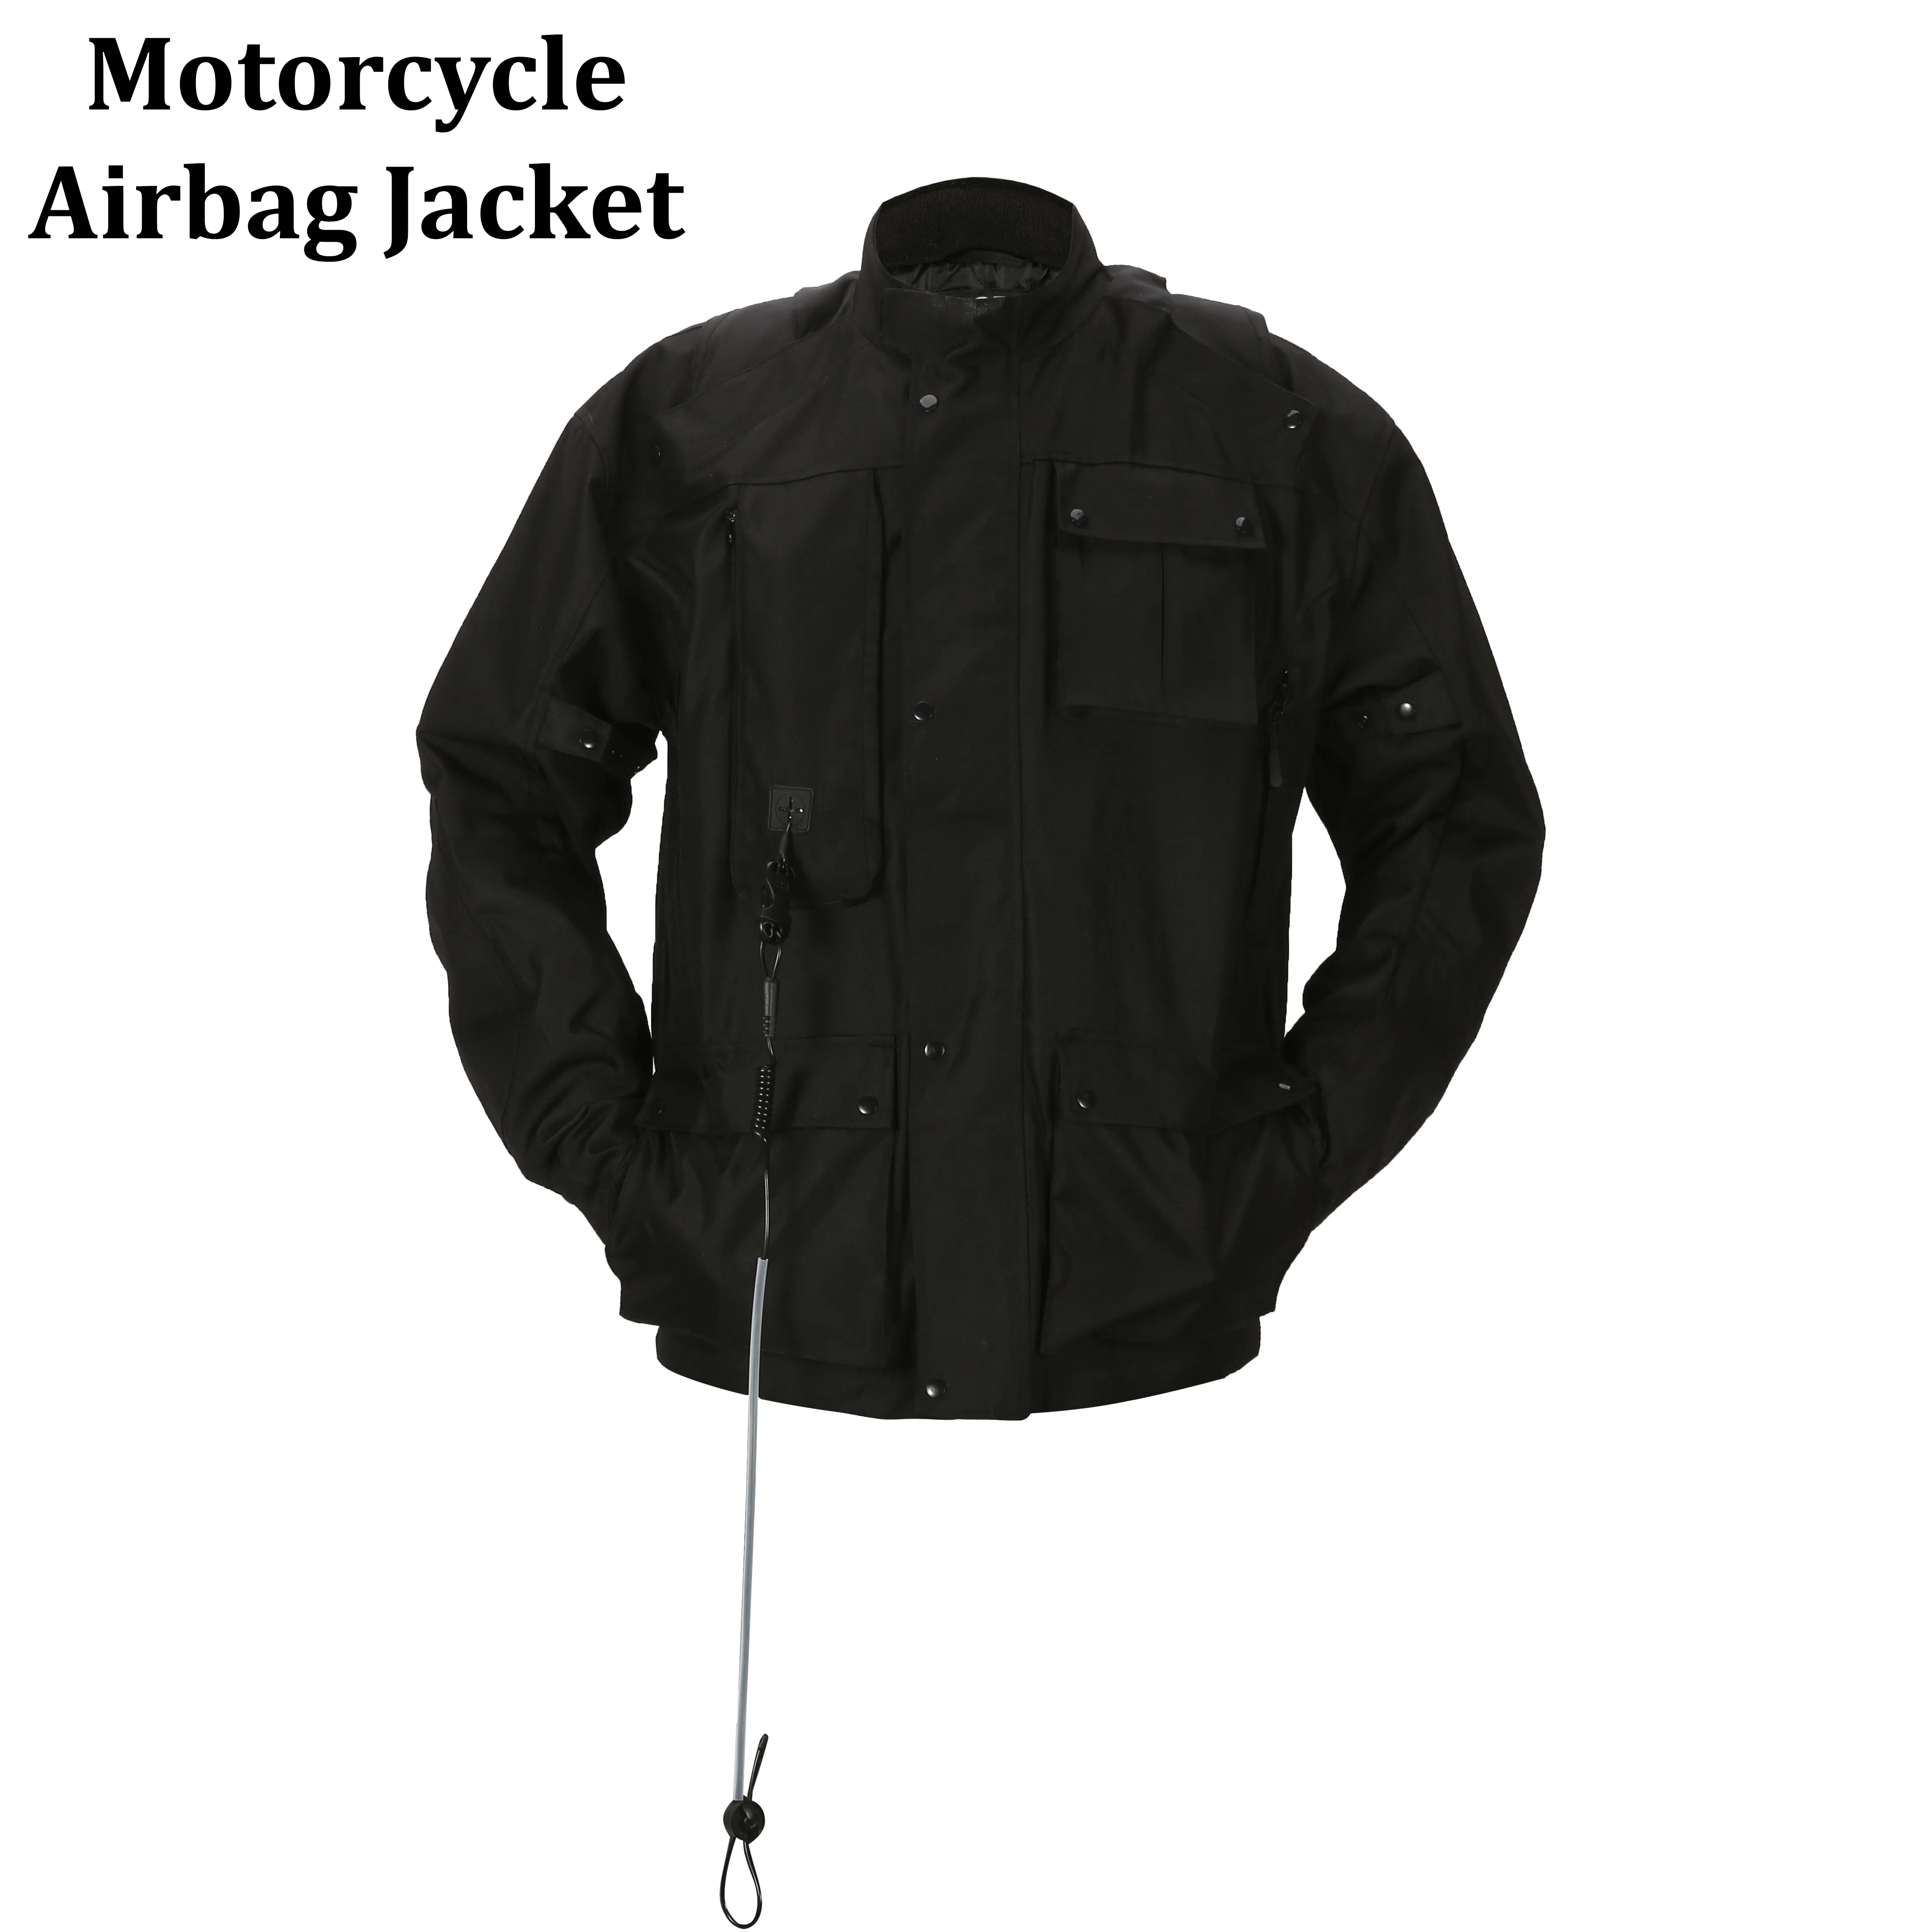 Individuelle Herren winddichte reflektierende Motorrad Sportbekleidung winddicht reflektierend Motorrad Textil Airbag Jacket Auto Rennsport Motorrad